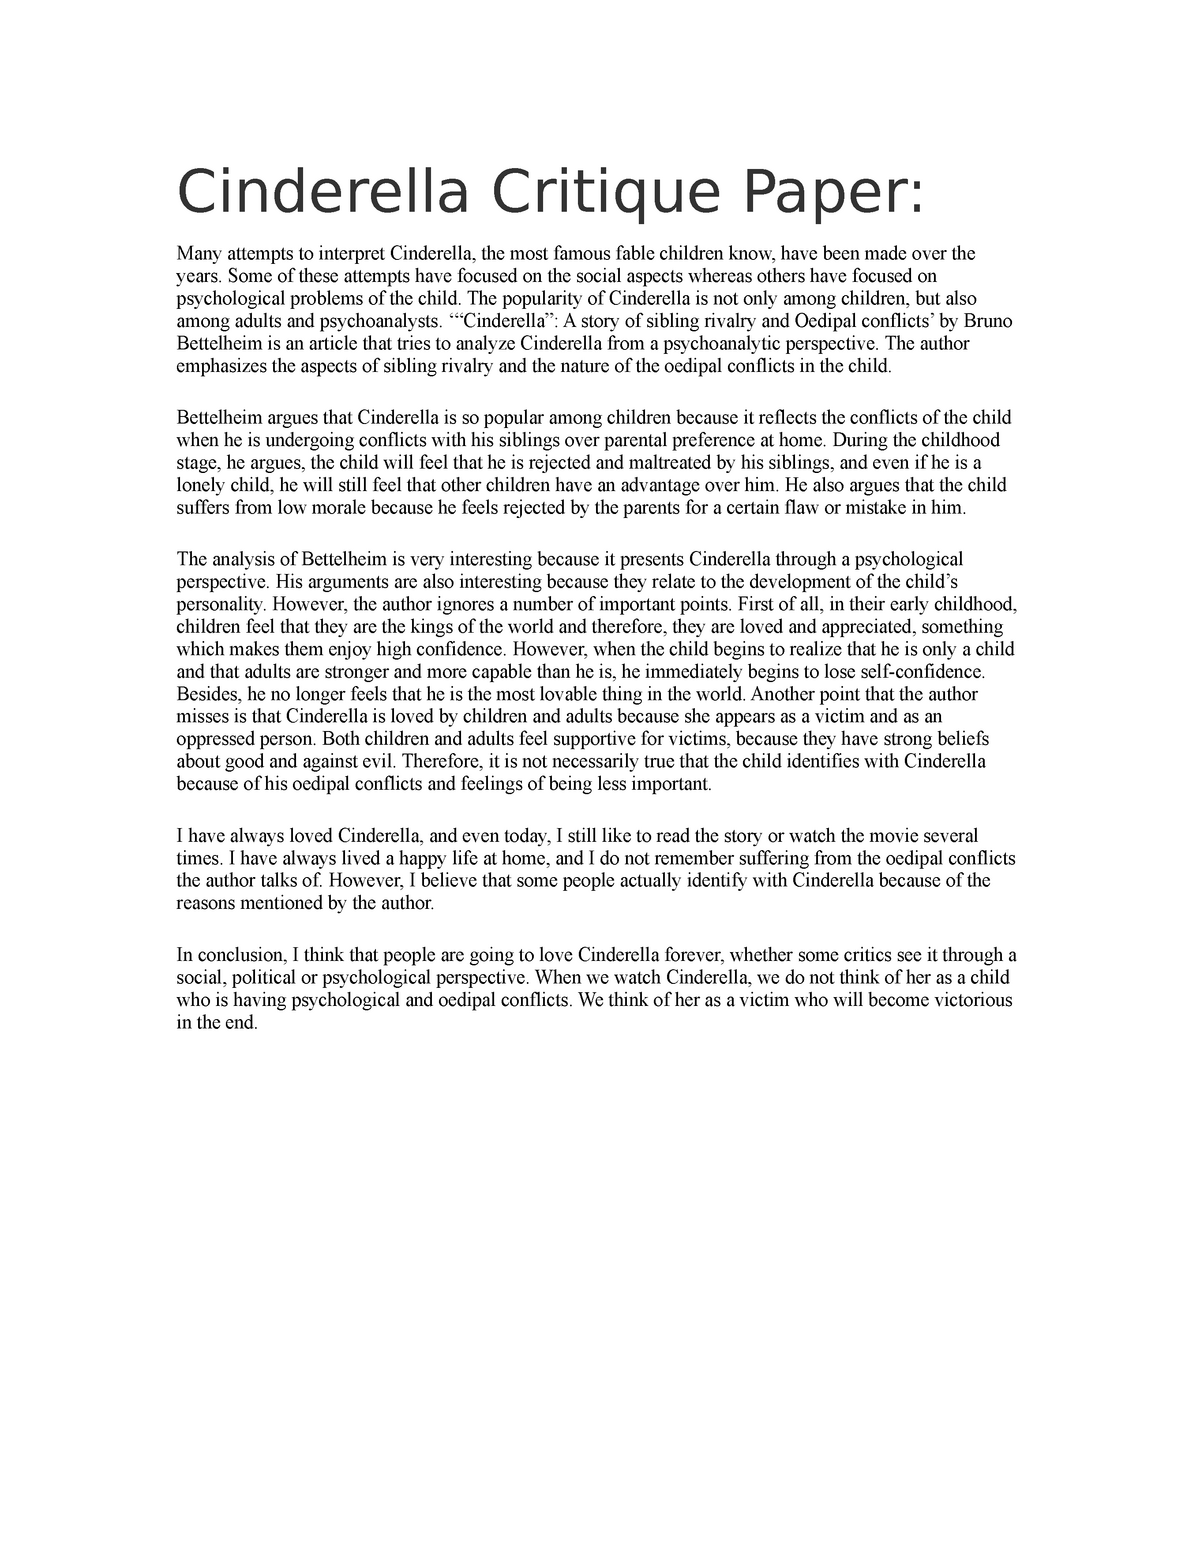 movie review essay cinderella